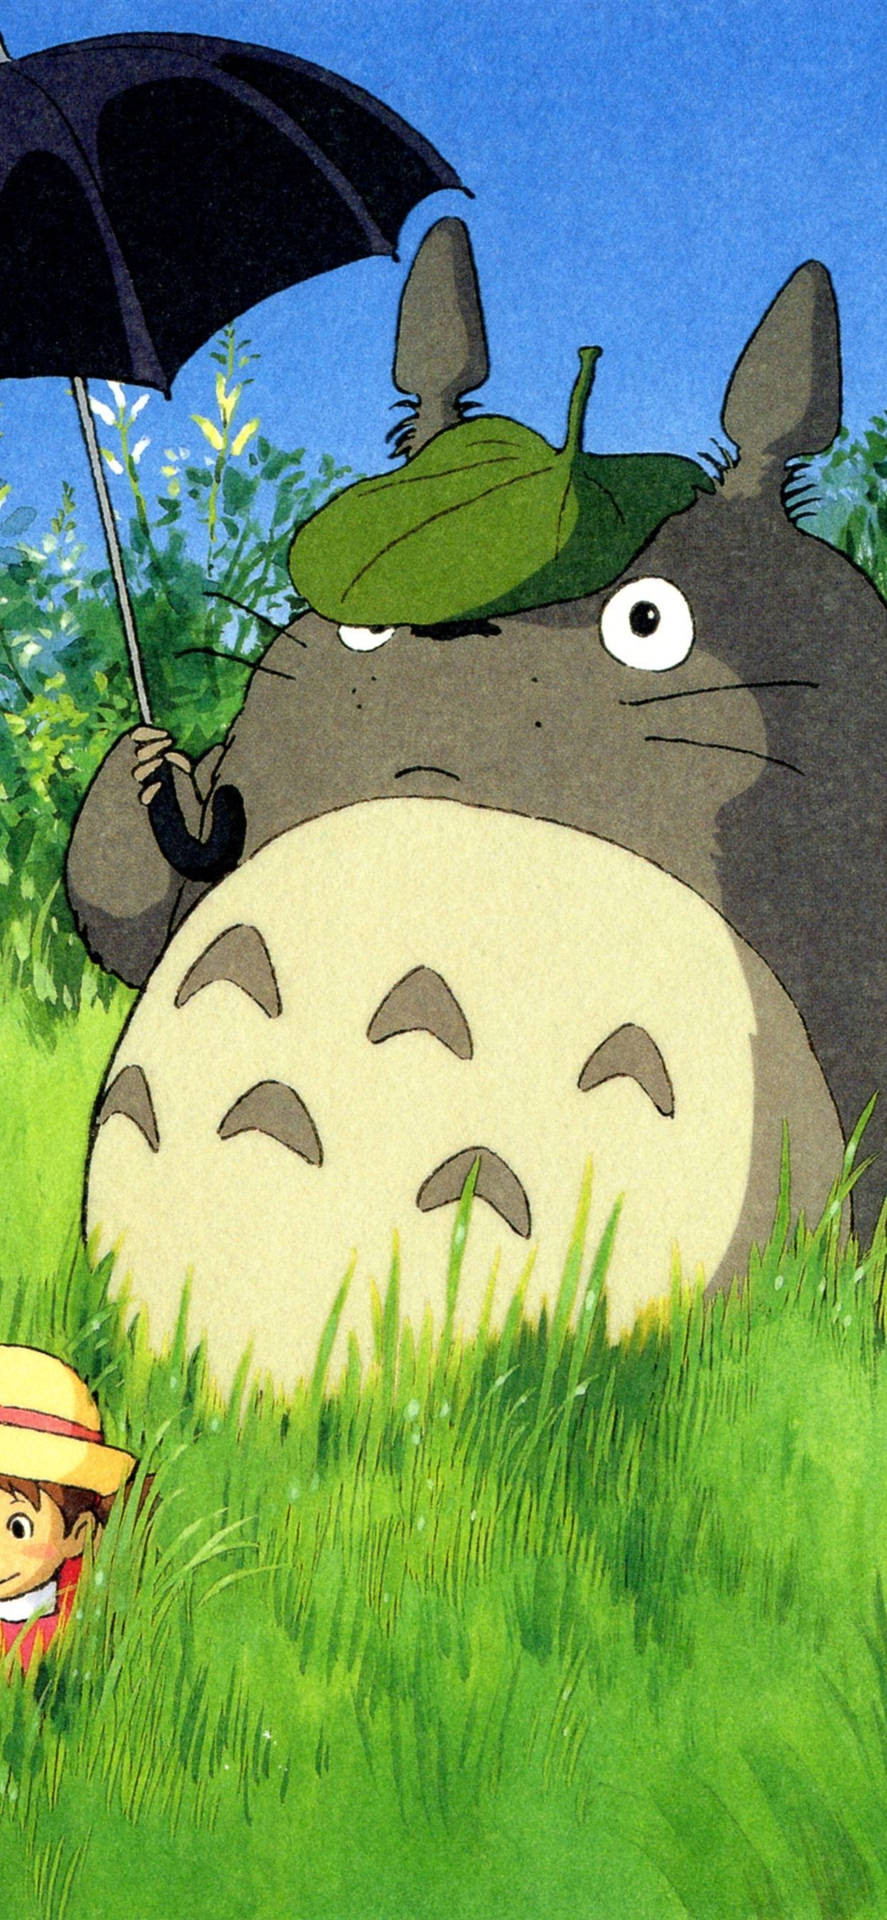 Bildnjut Av Klassiska Studio Ghibli-filmer På Din Telefon. Wallpaper